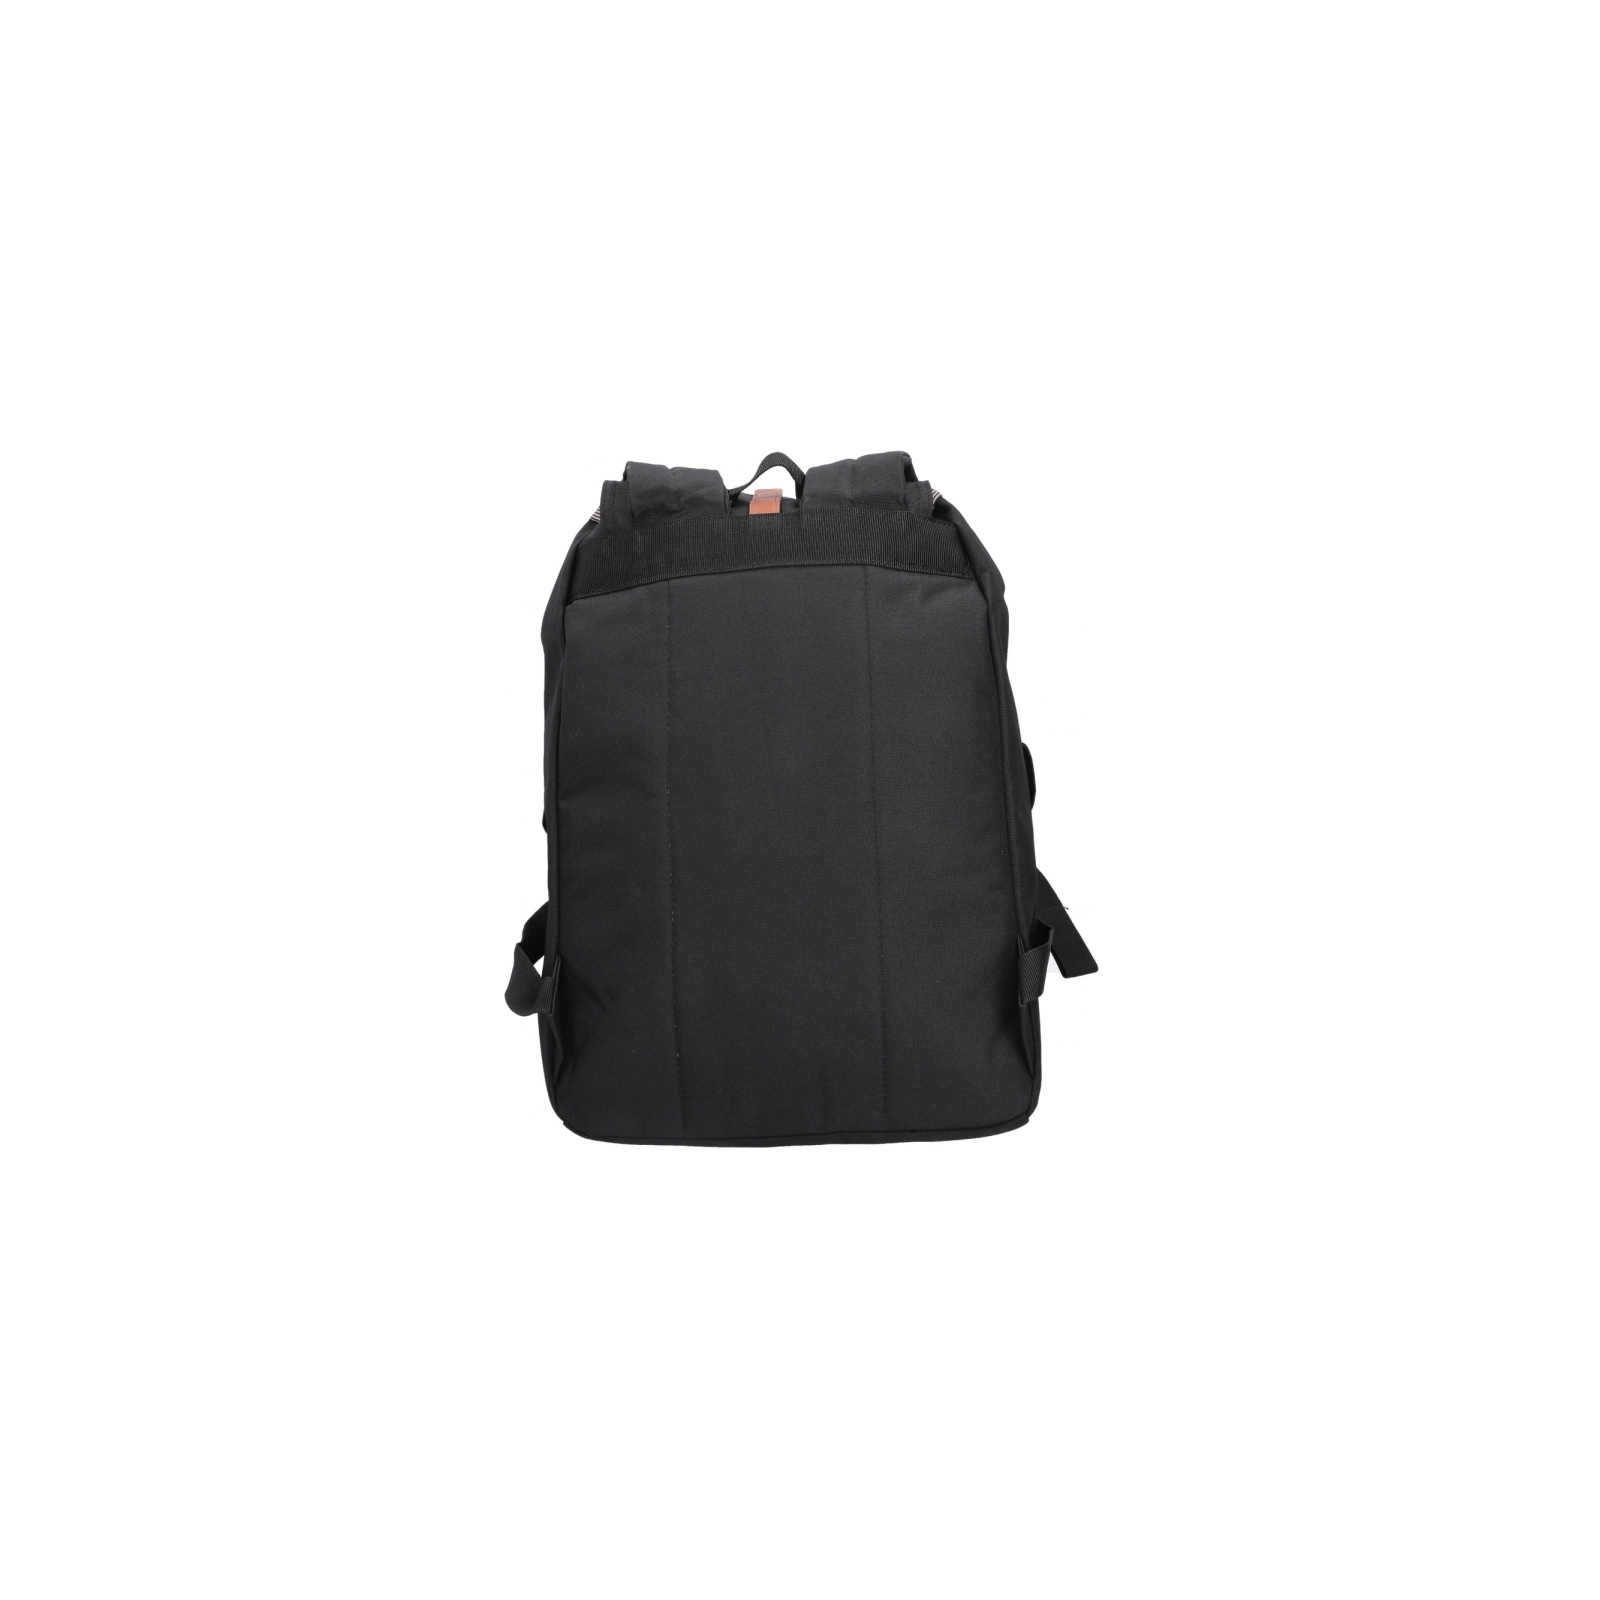 Рюкзак школьный Bodachel 43*19*29 см Черный (BS13-01) изображение 3